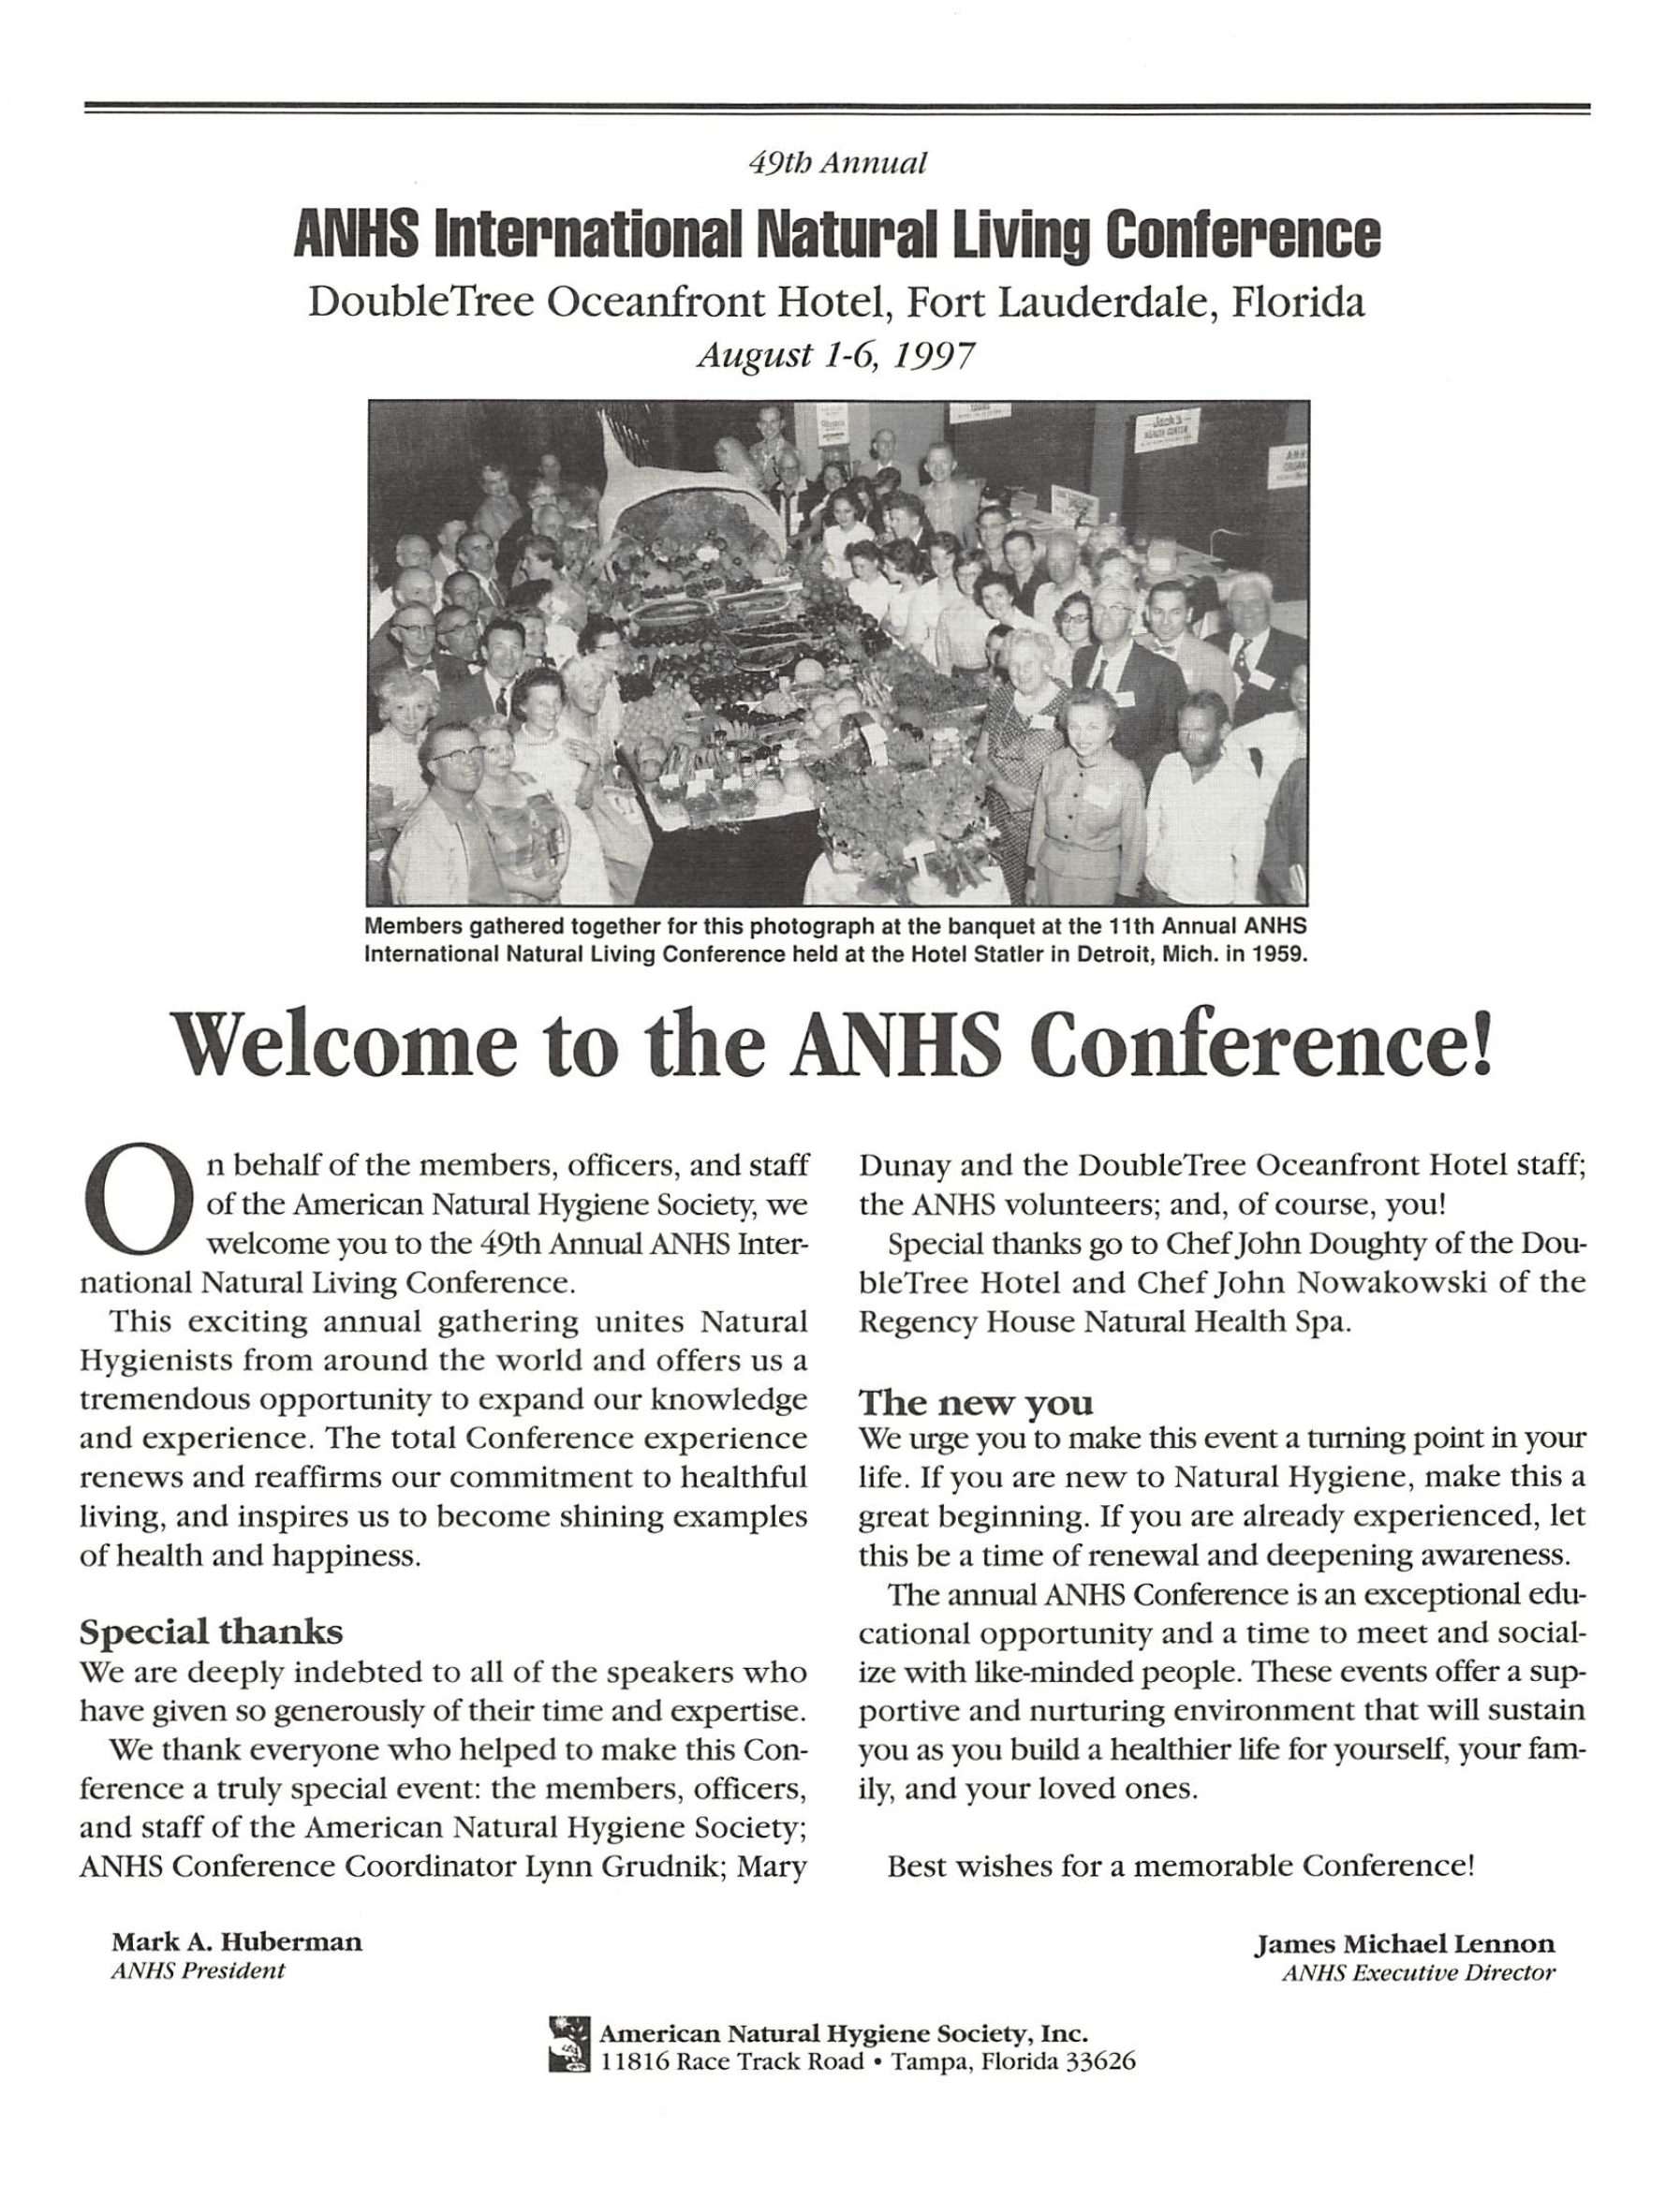 Conference Program. Fort Lauderdale, 1997